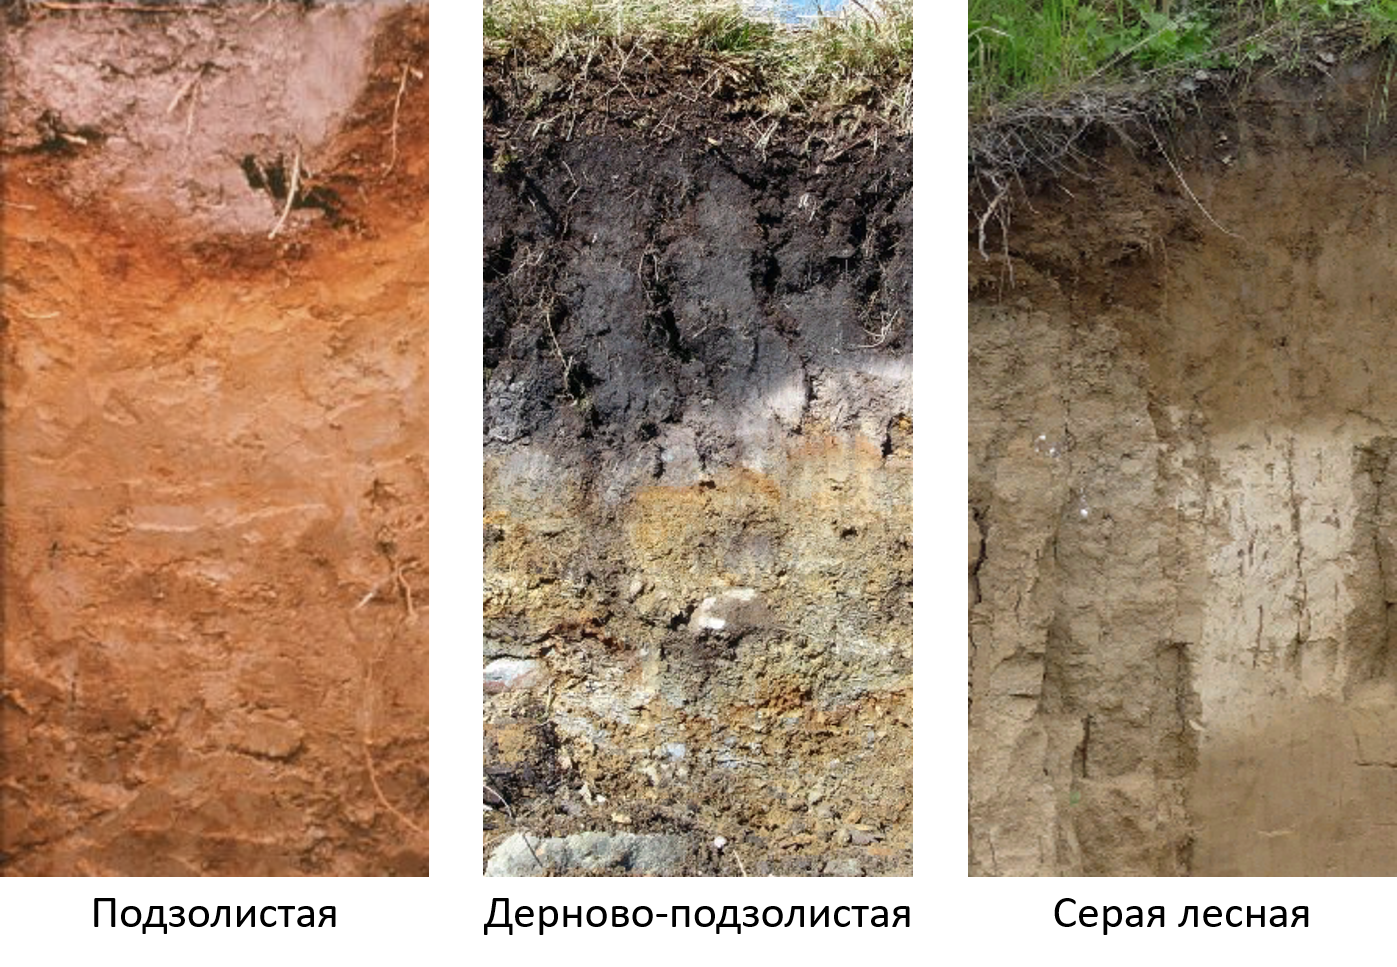 Дерново подзолистый тип почвы природная зона